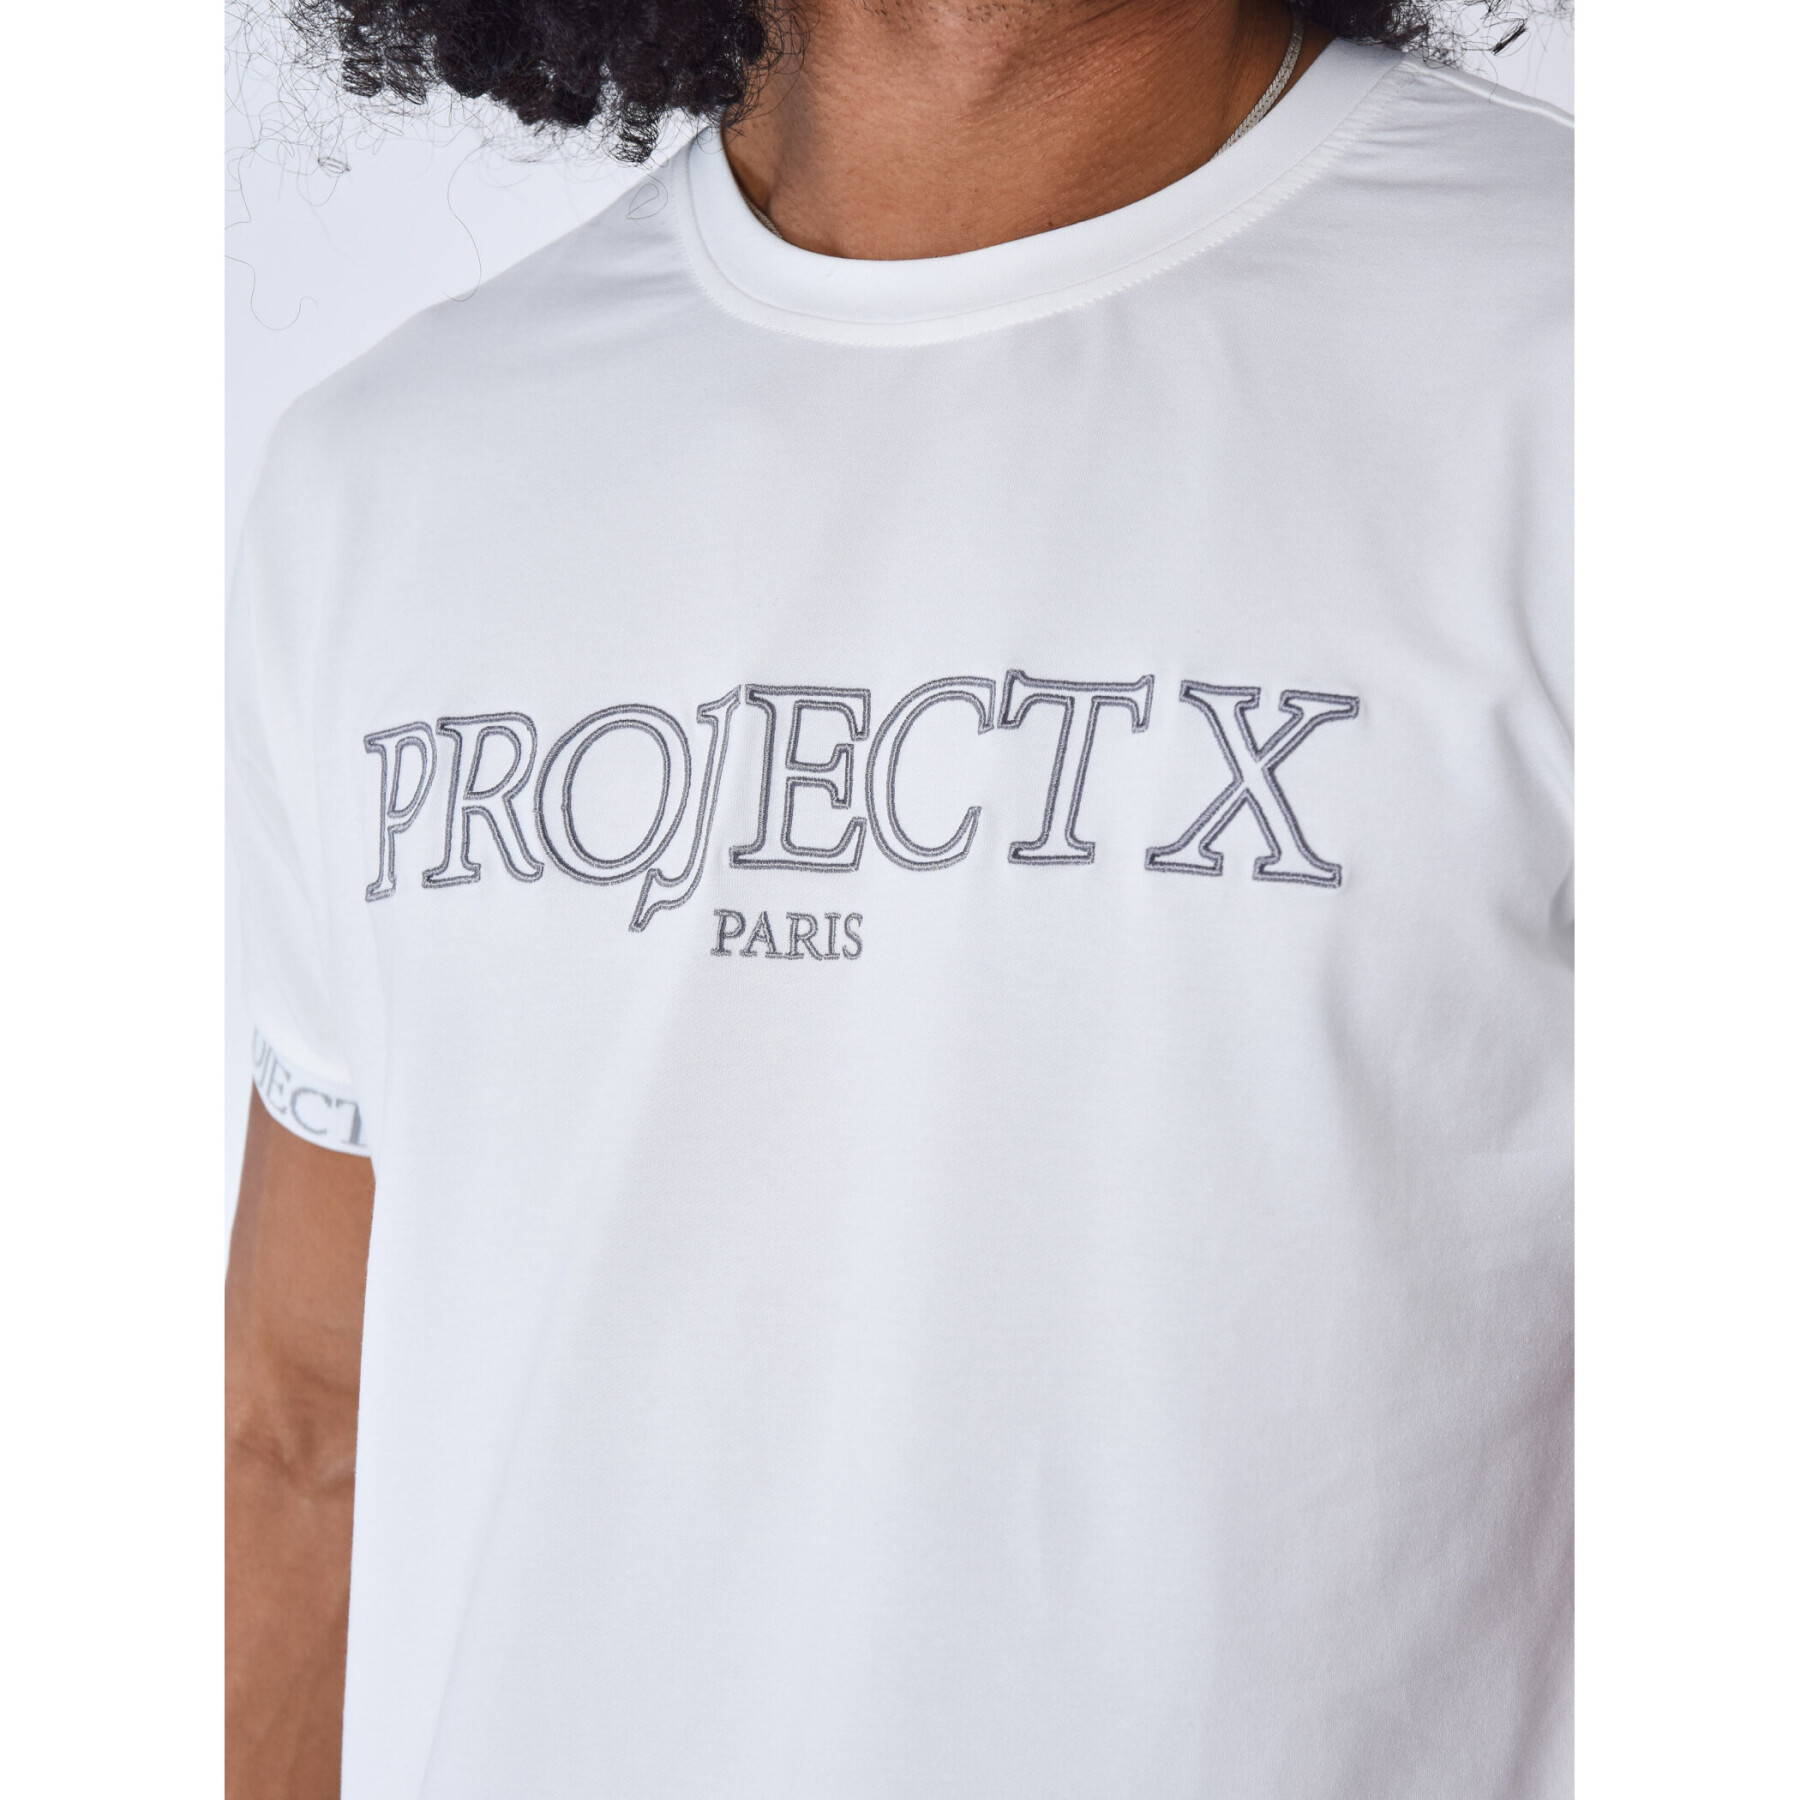 T-shirt Project X Paris